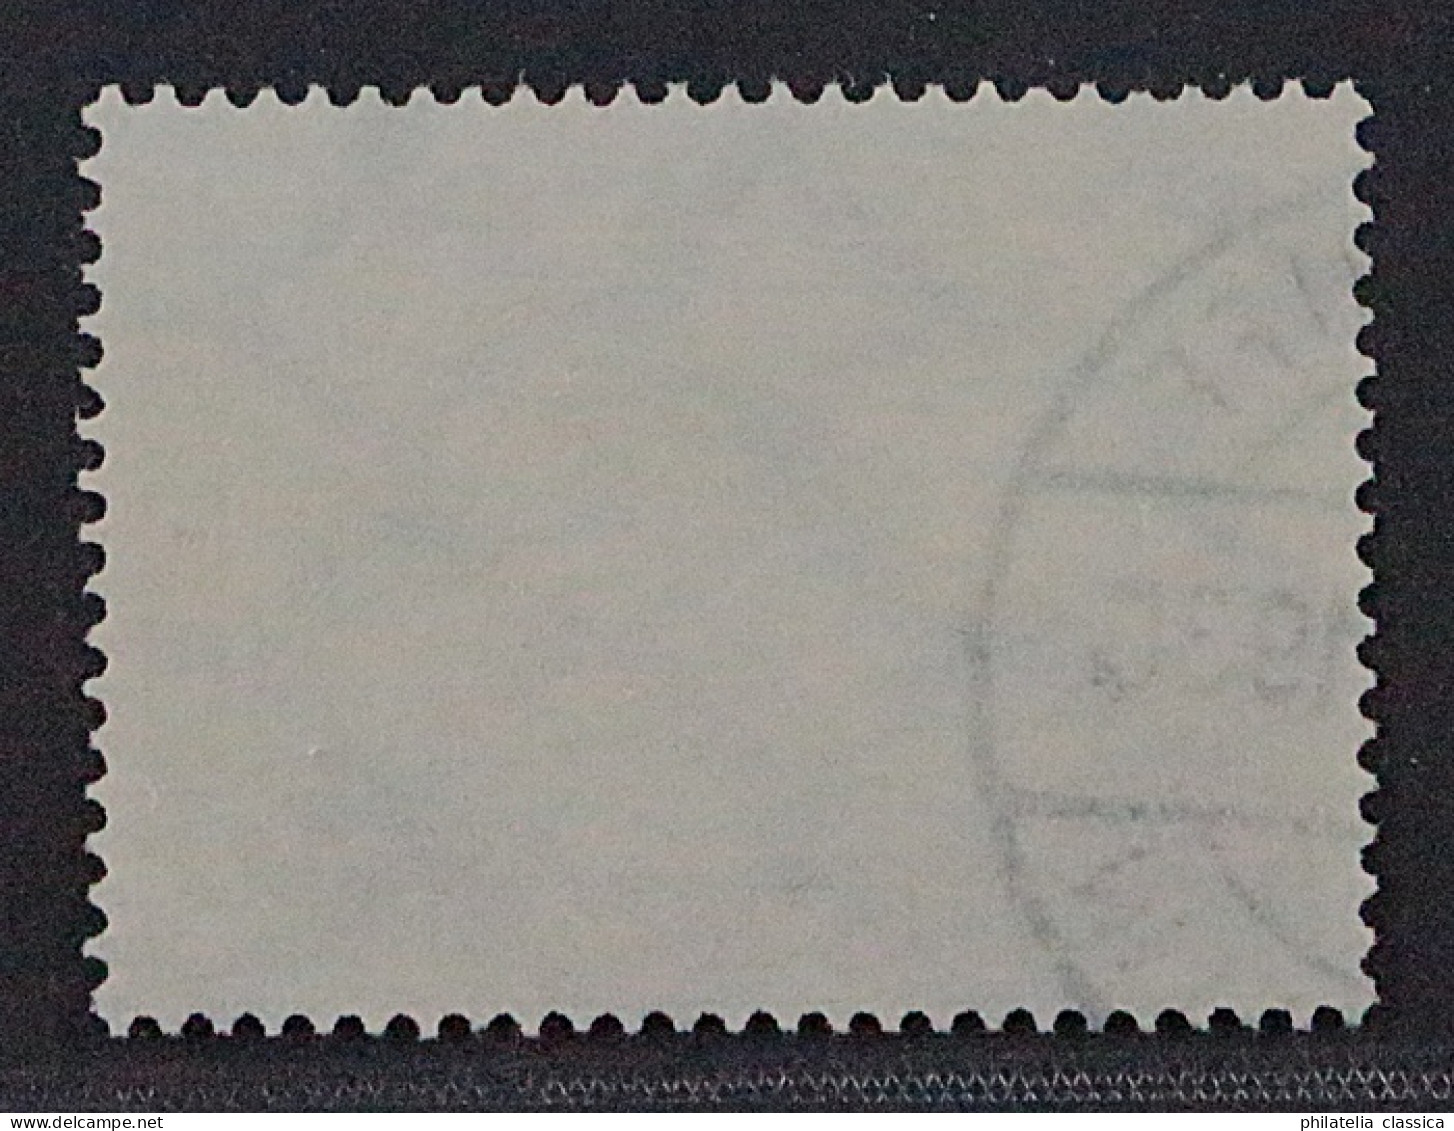 Deutsches Reich 438 Y, 1930, Südamerikafahrt 2 RM, Sauber Gestempelt, 400,-€ - Oblitérés